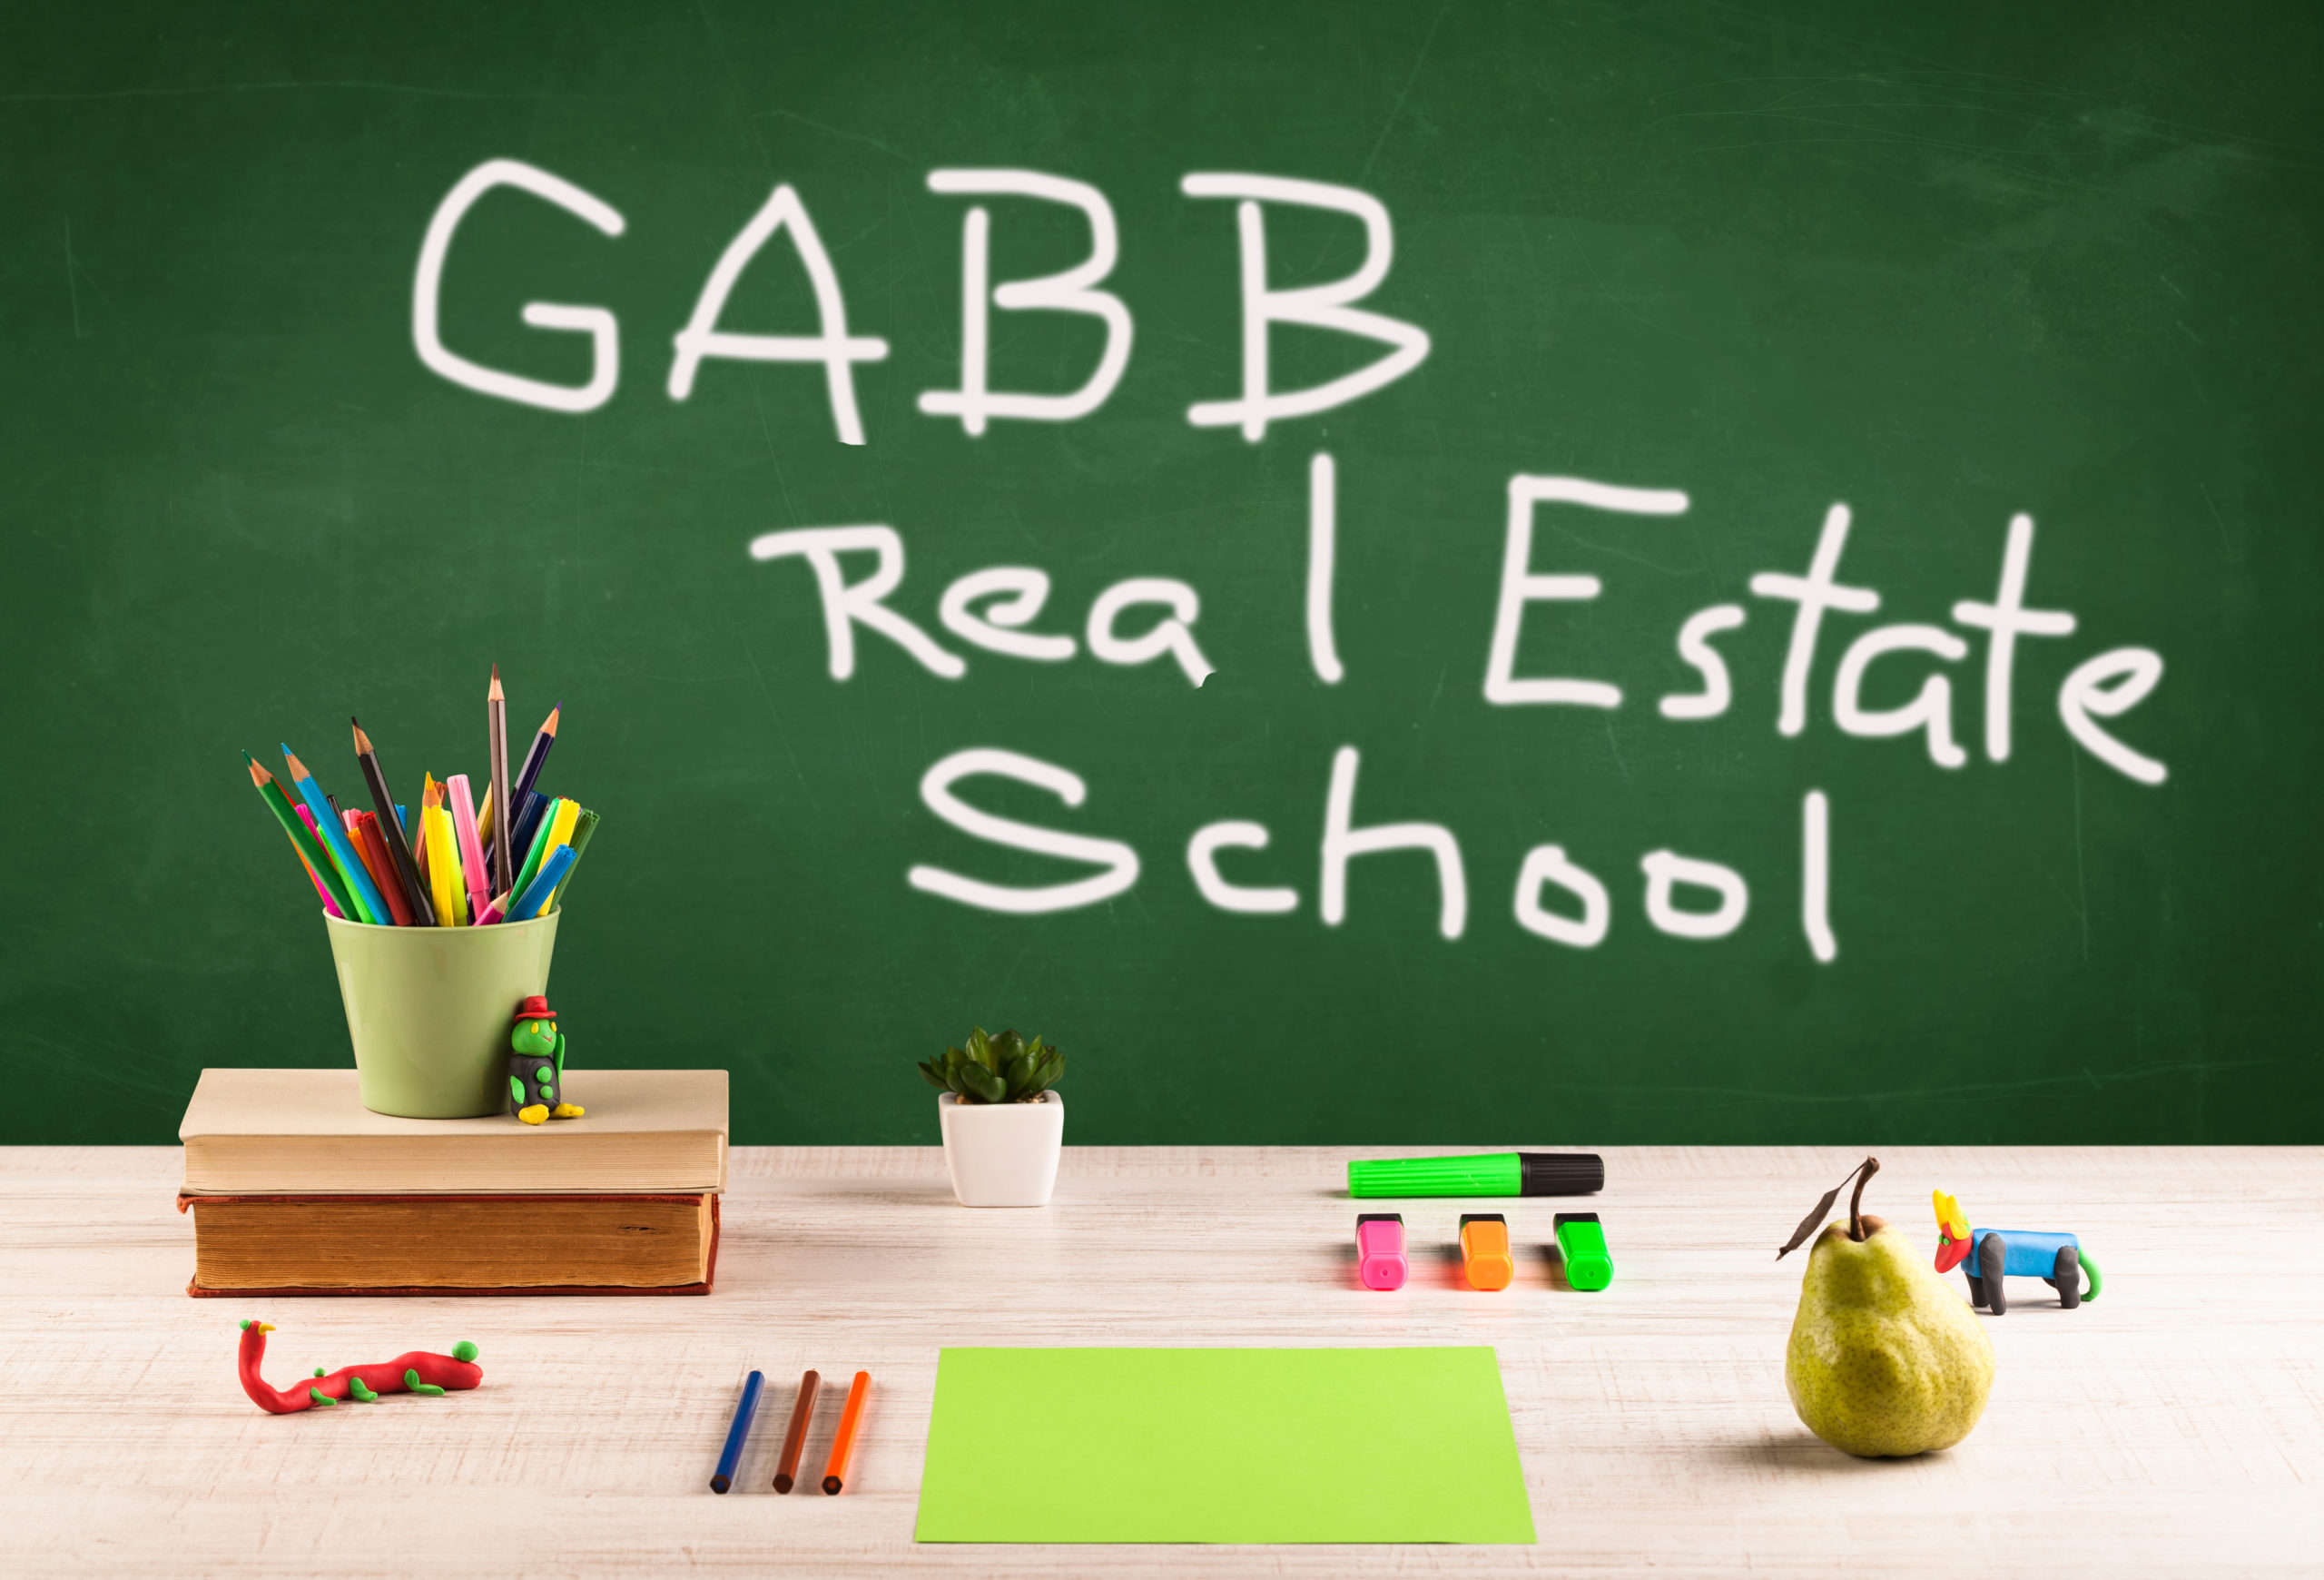 Blackboard GABB Real Estate School